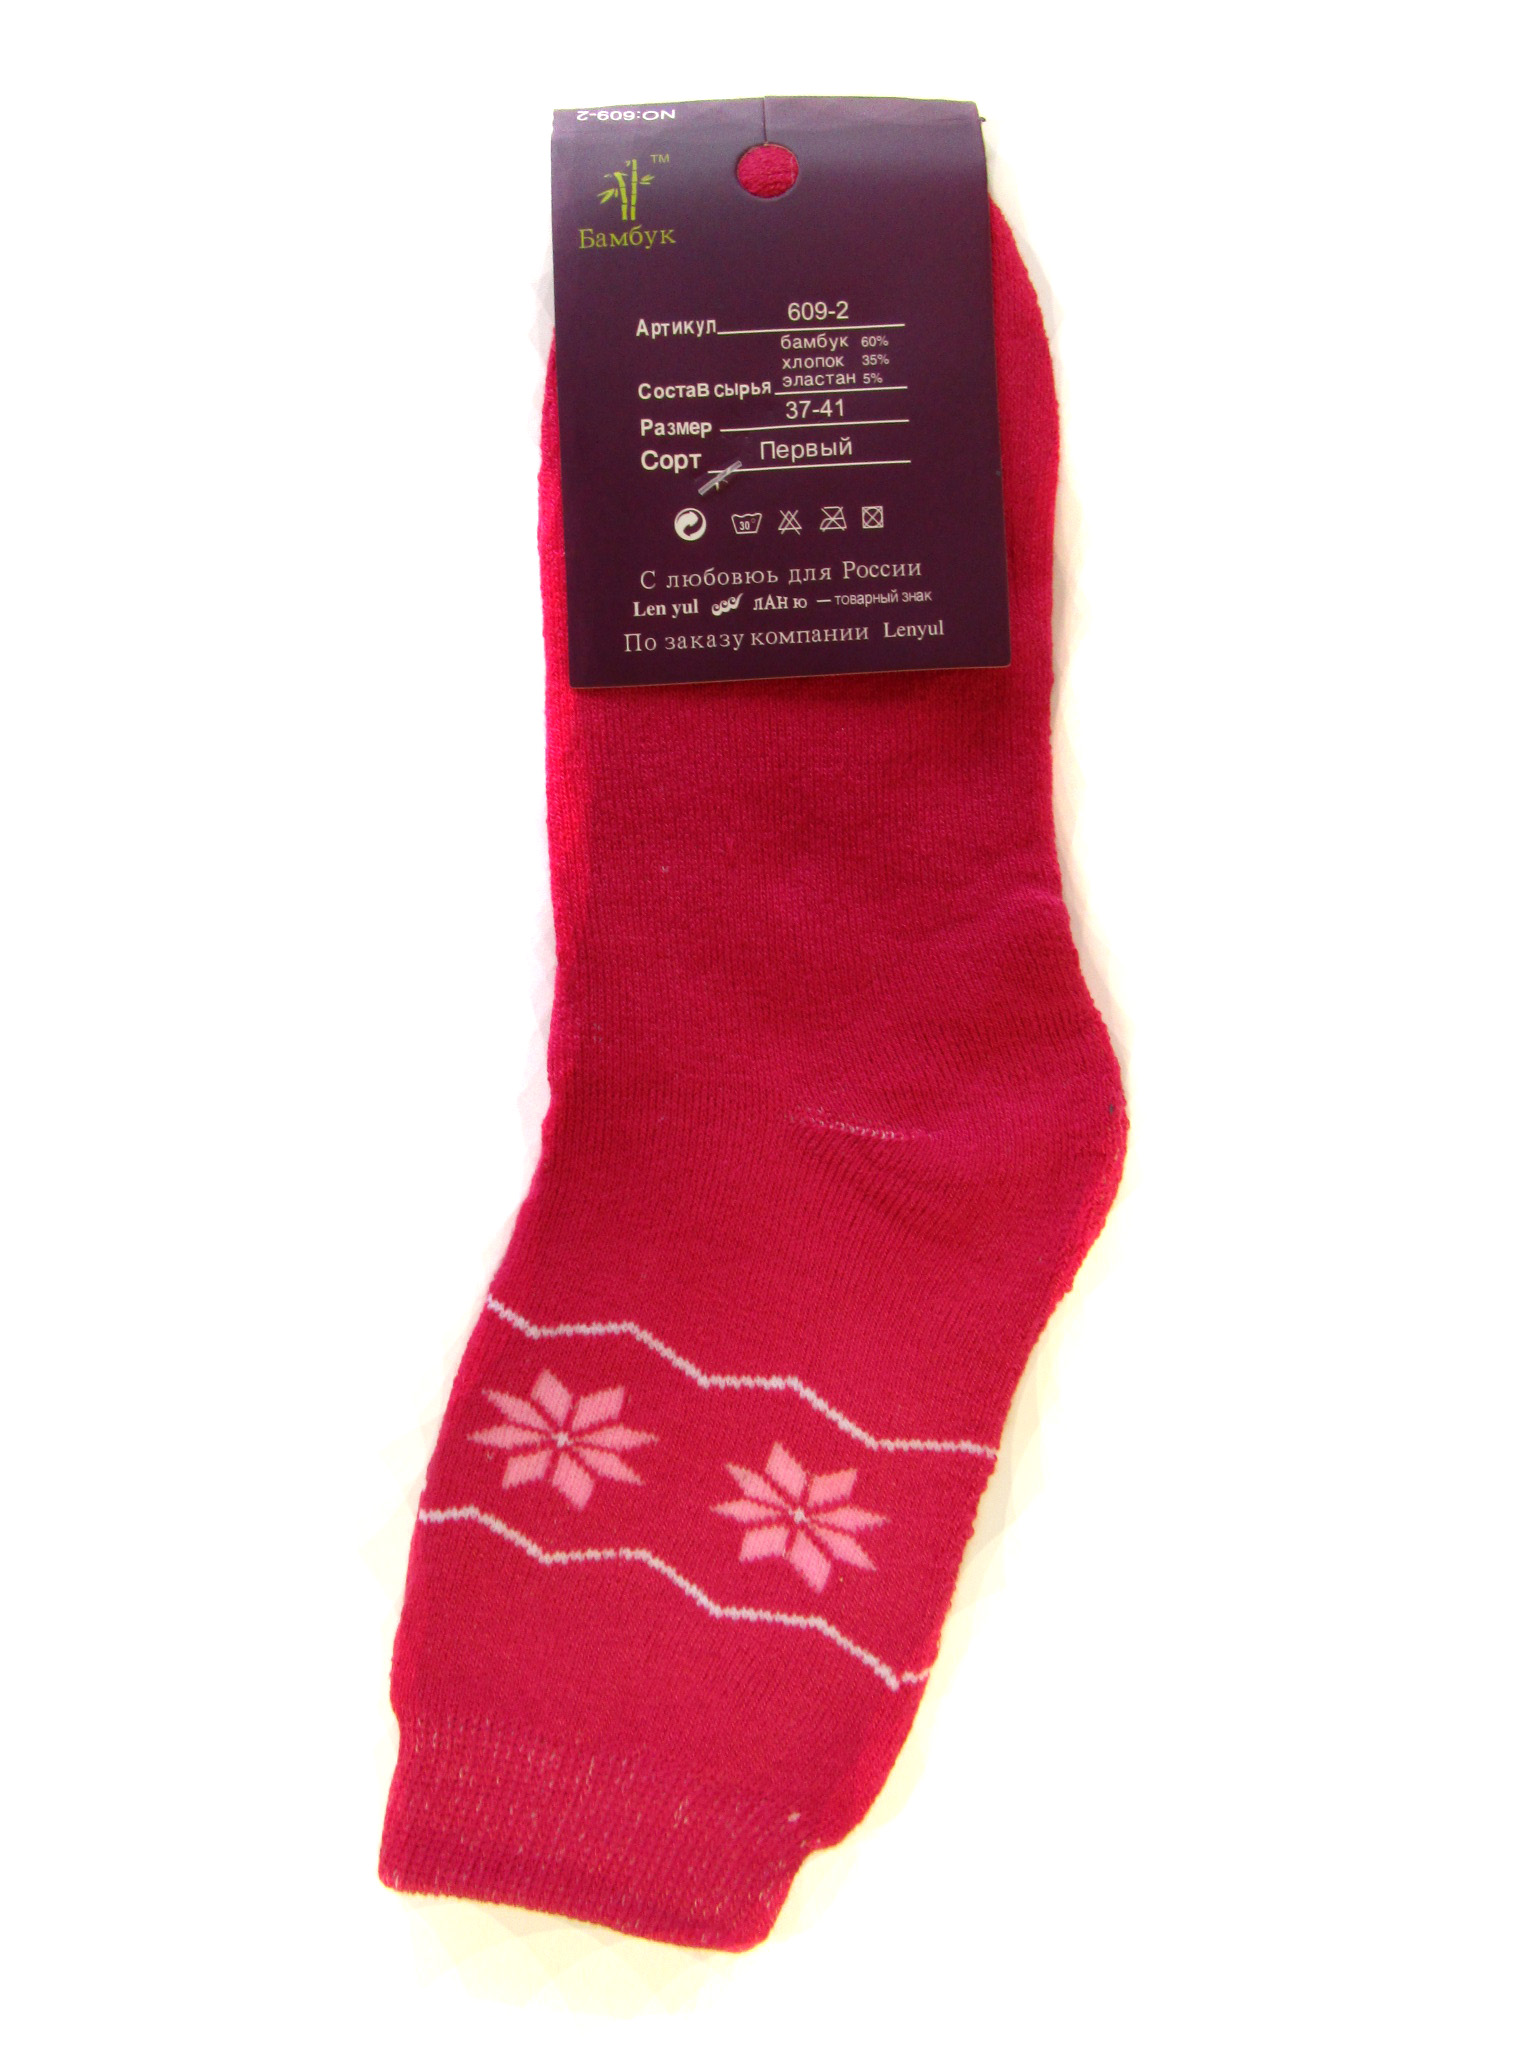 Женские носки теплые "Ланю" (арт.609-2)